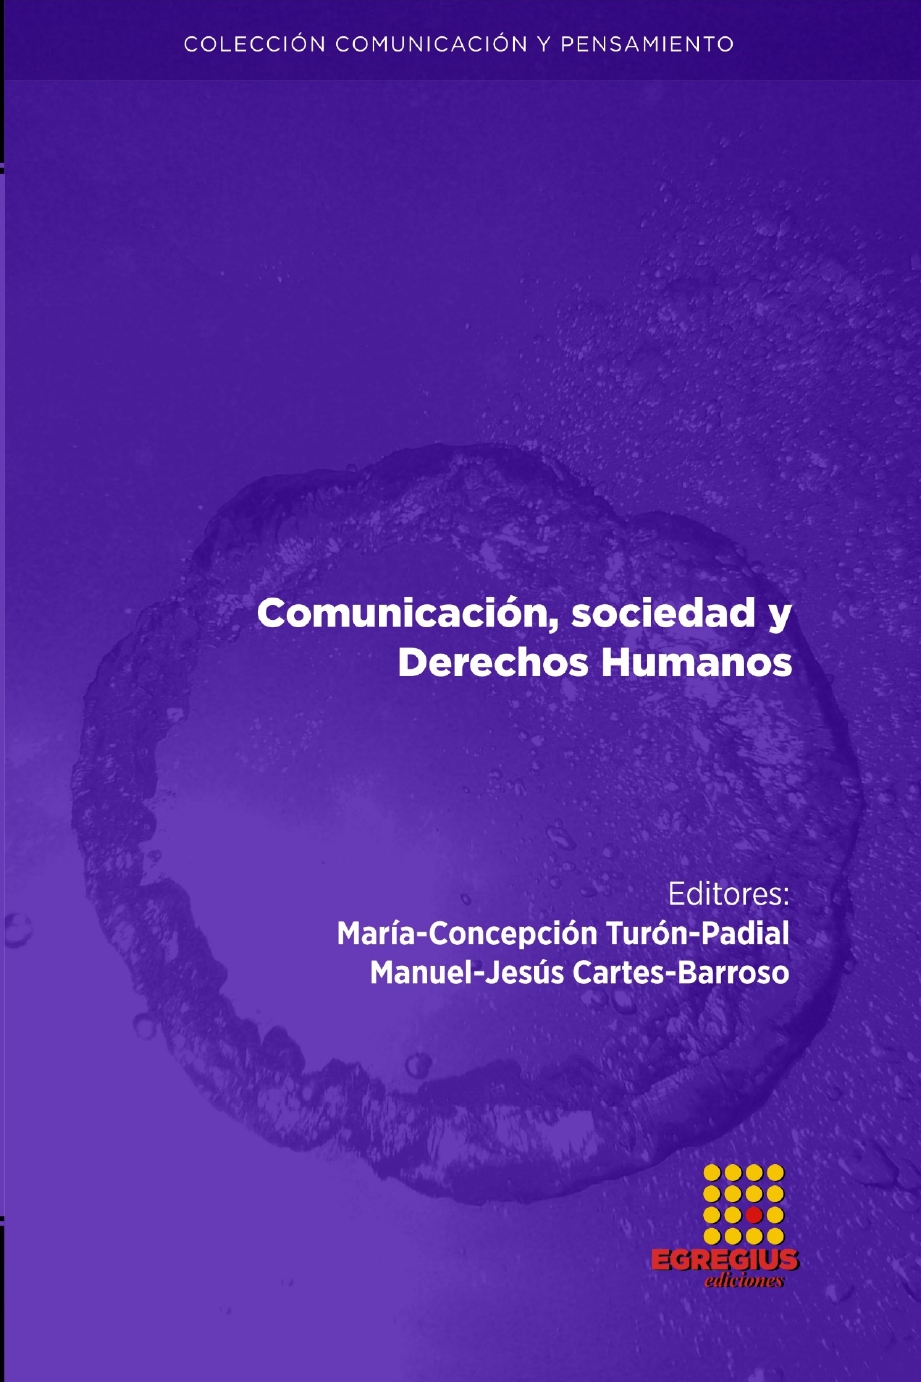 Imagen de portada del libro Comunicación, sociedad y derechos humanos